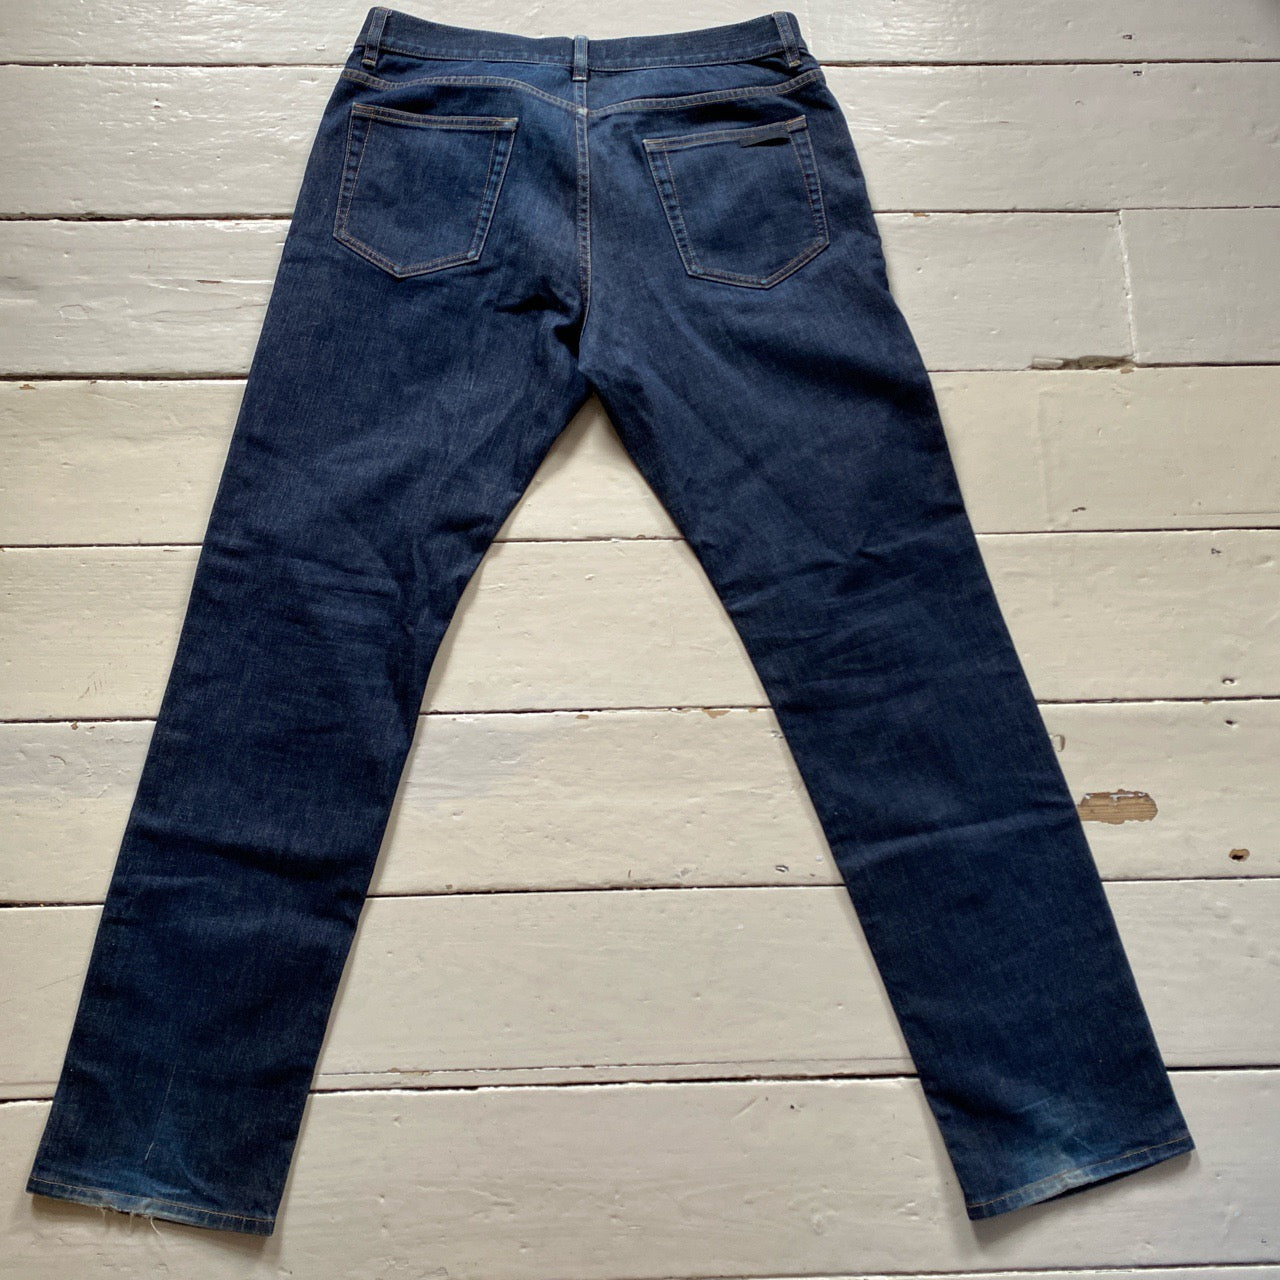 Prada Milano Jeans (36/32)